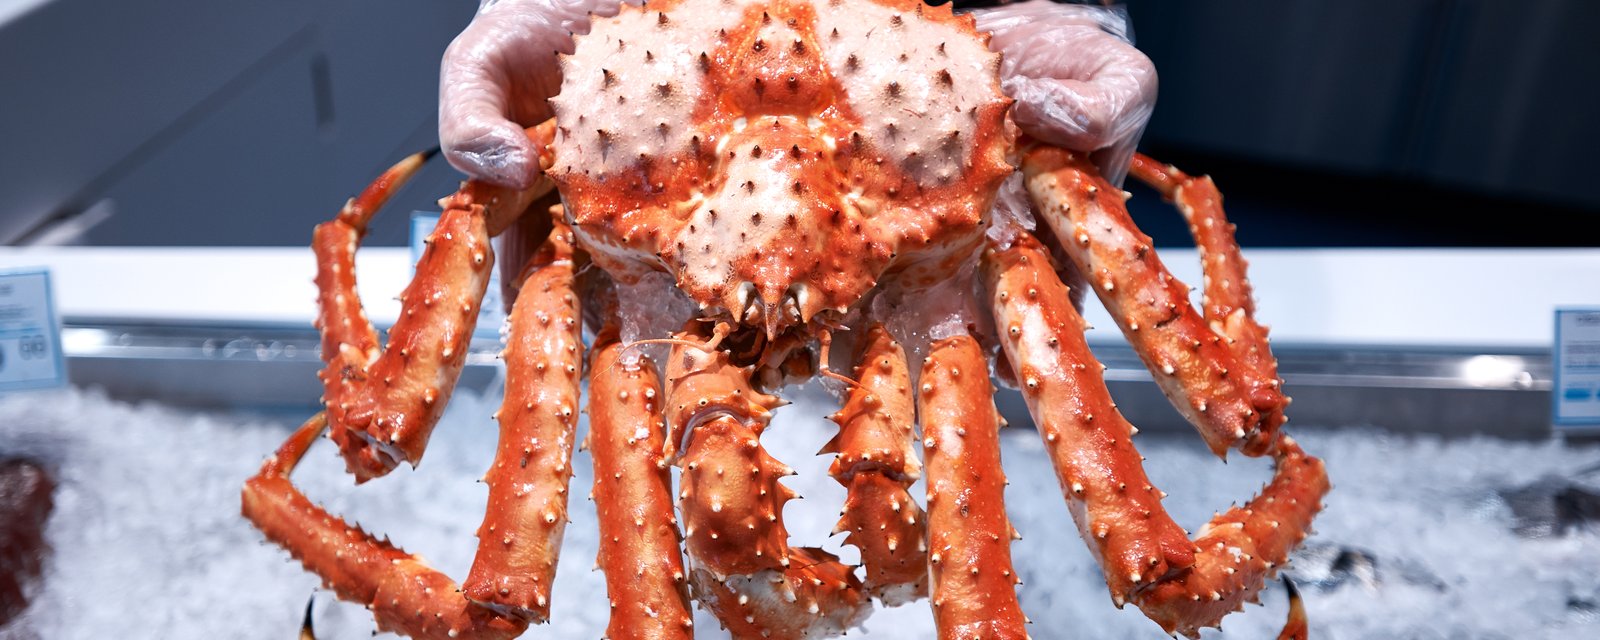 Le prix du crabe des neiges chute à son plus bas depuis très longtemps